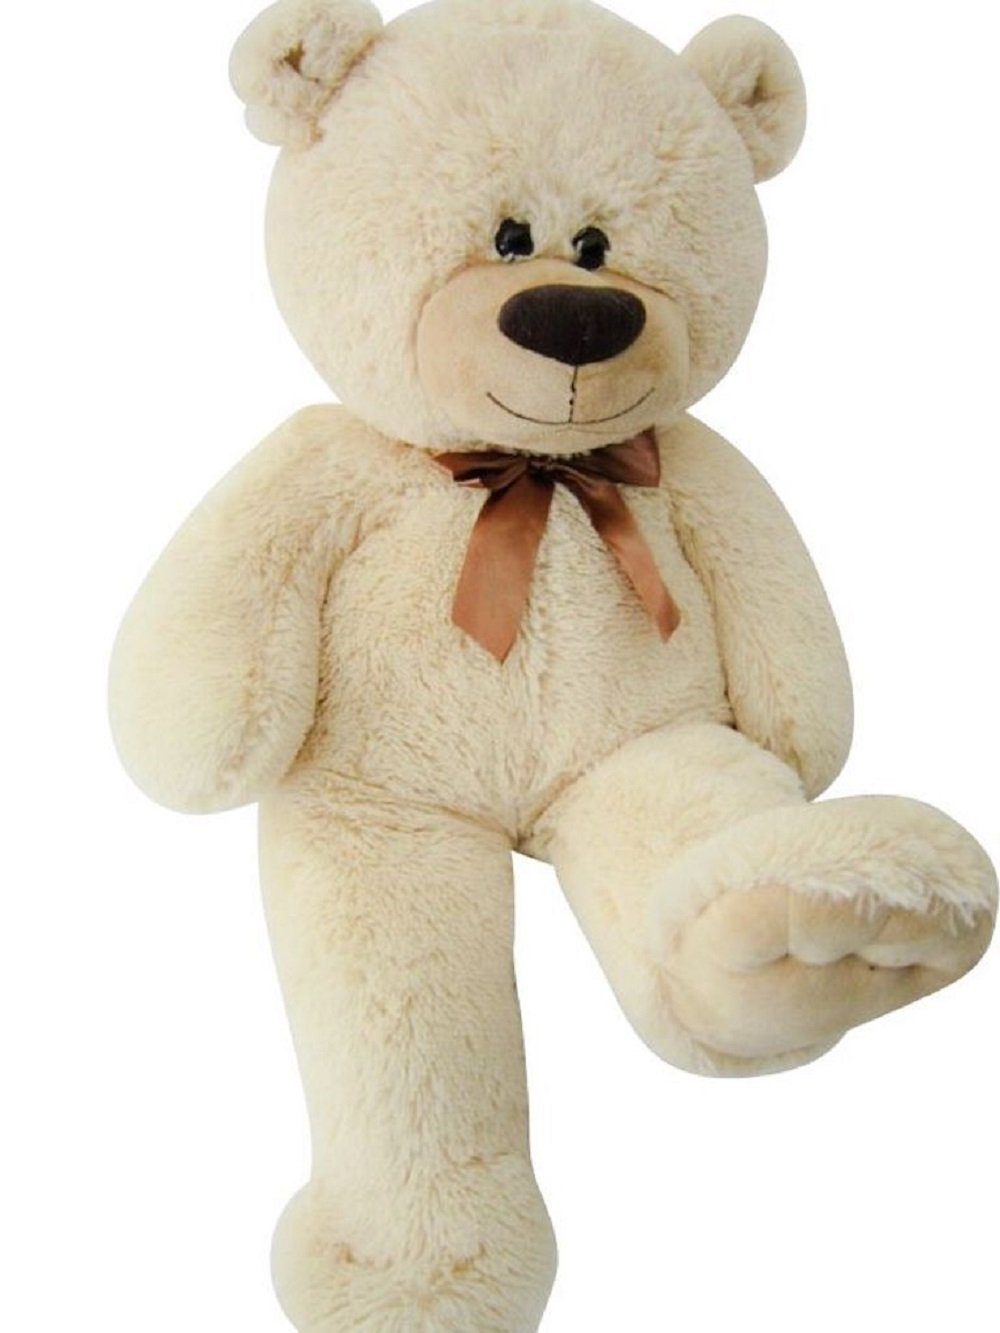 Sweety-Toys Kuscheltier Sweety Toys 4638 Teddybär 80 cm beige - kuscheliger Teddy mit Schleife